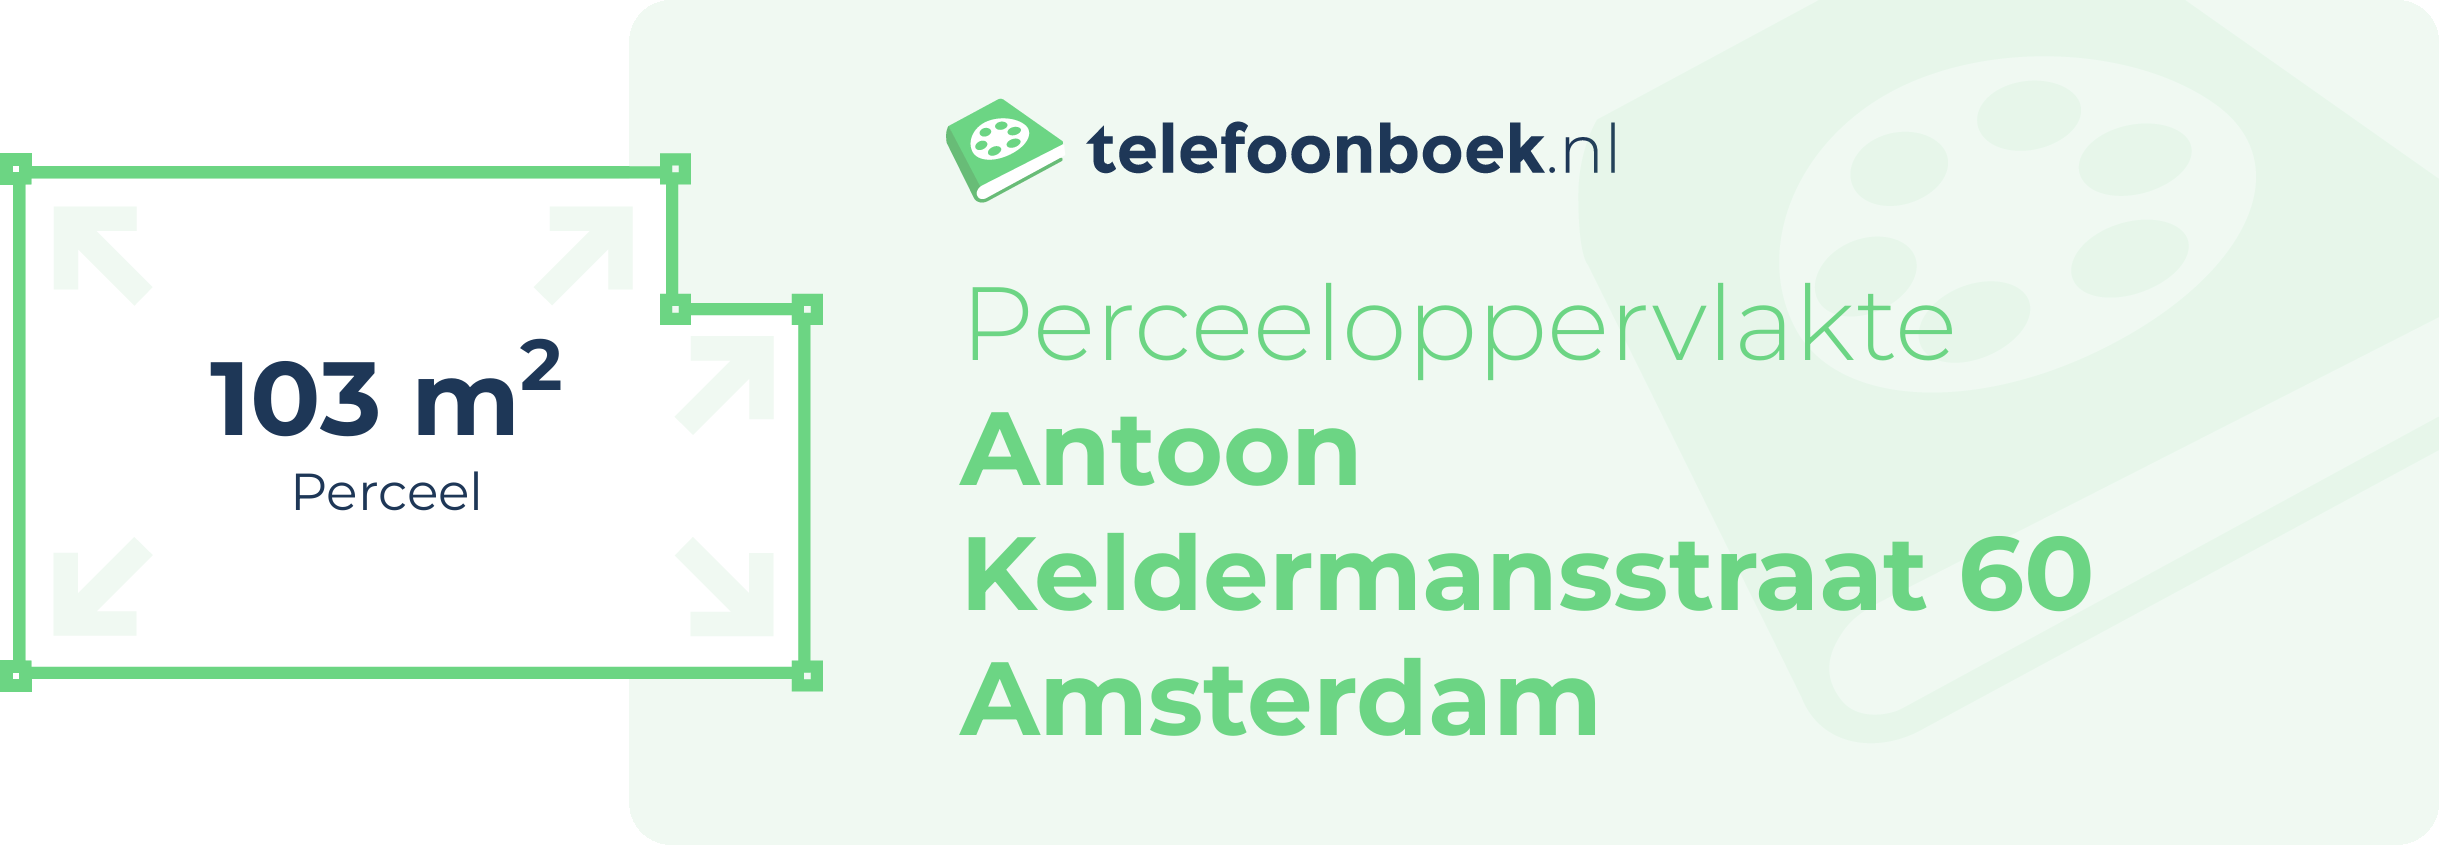 Perceeloppervlakte Antoon Keldermansstraat 60 Amsterdam